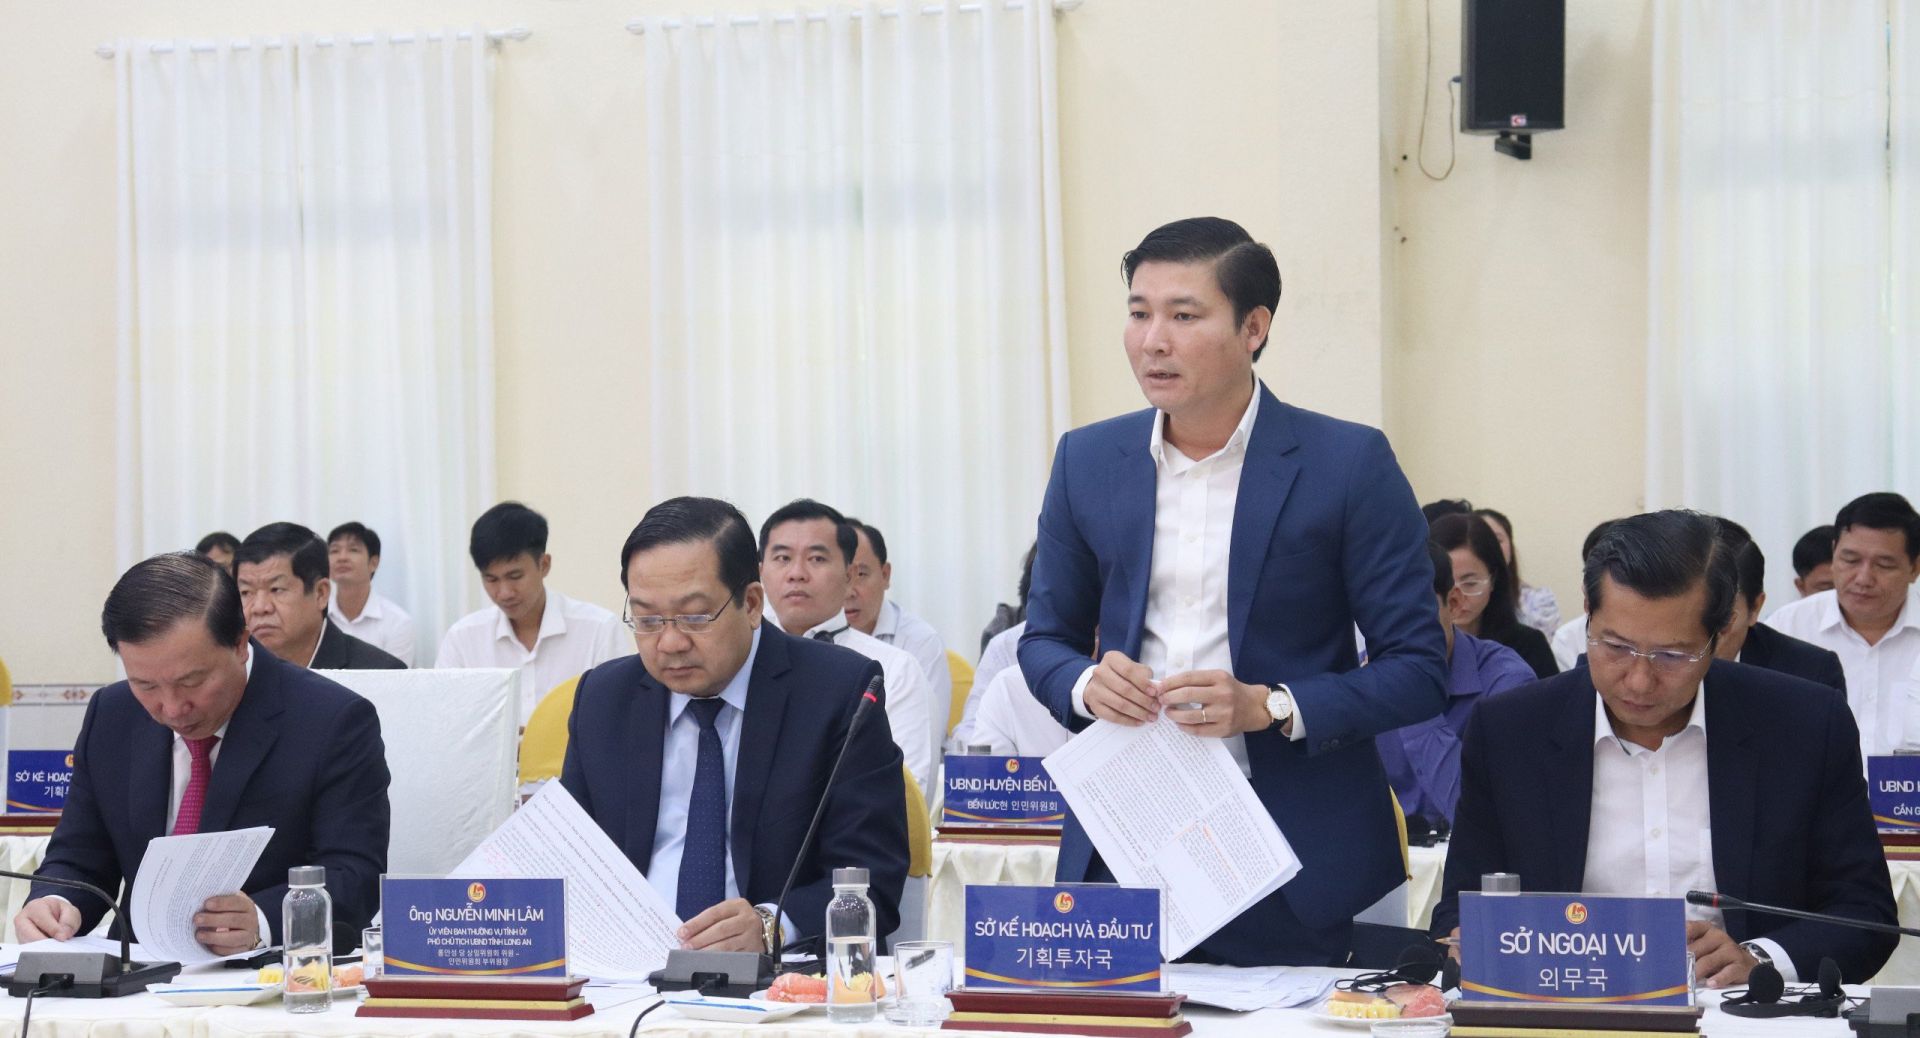 Giám đốc Sở Kế hoạch và Đầu tư – Trương Văn Liếp trả lời câu hỏi liên quan lĩnh vực đầu tư tại tỉnh Long An